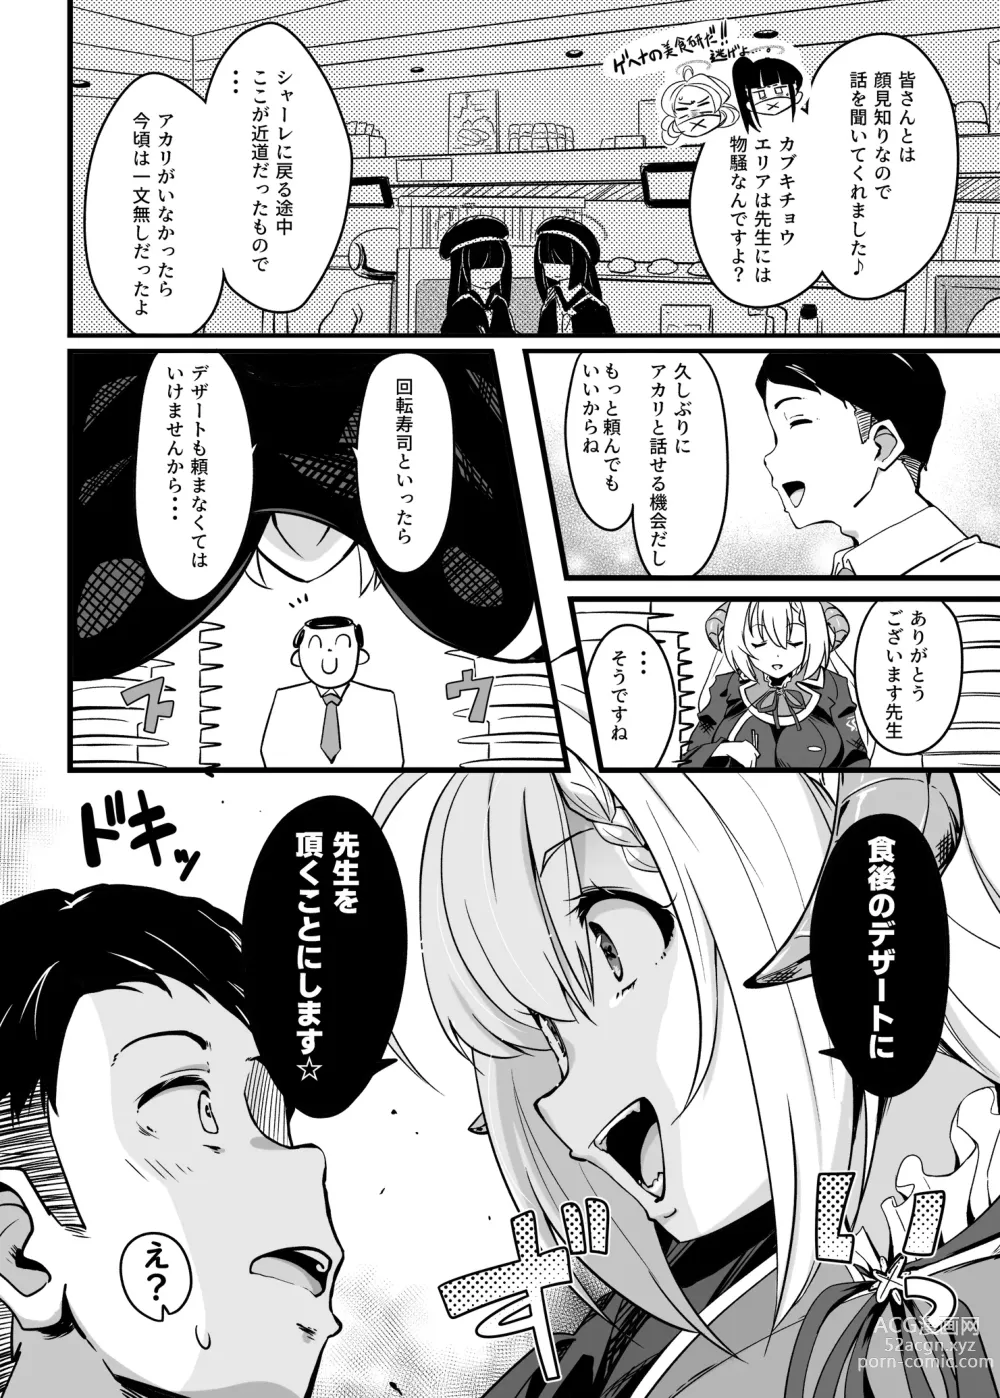 Page 3 of doujinshi Zen Koutei Seito. Wanibuchi go Houbi Time Web Koukai-ban